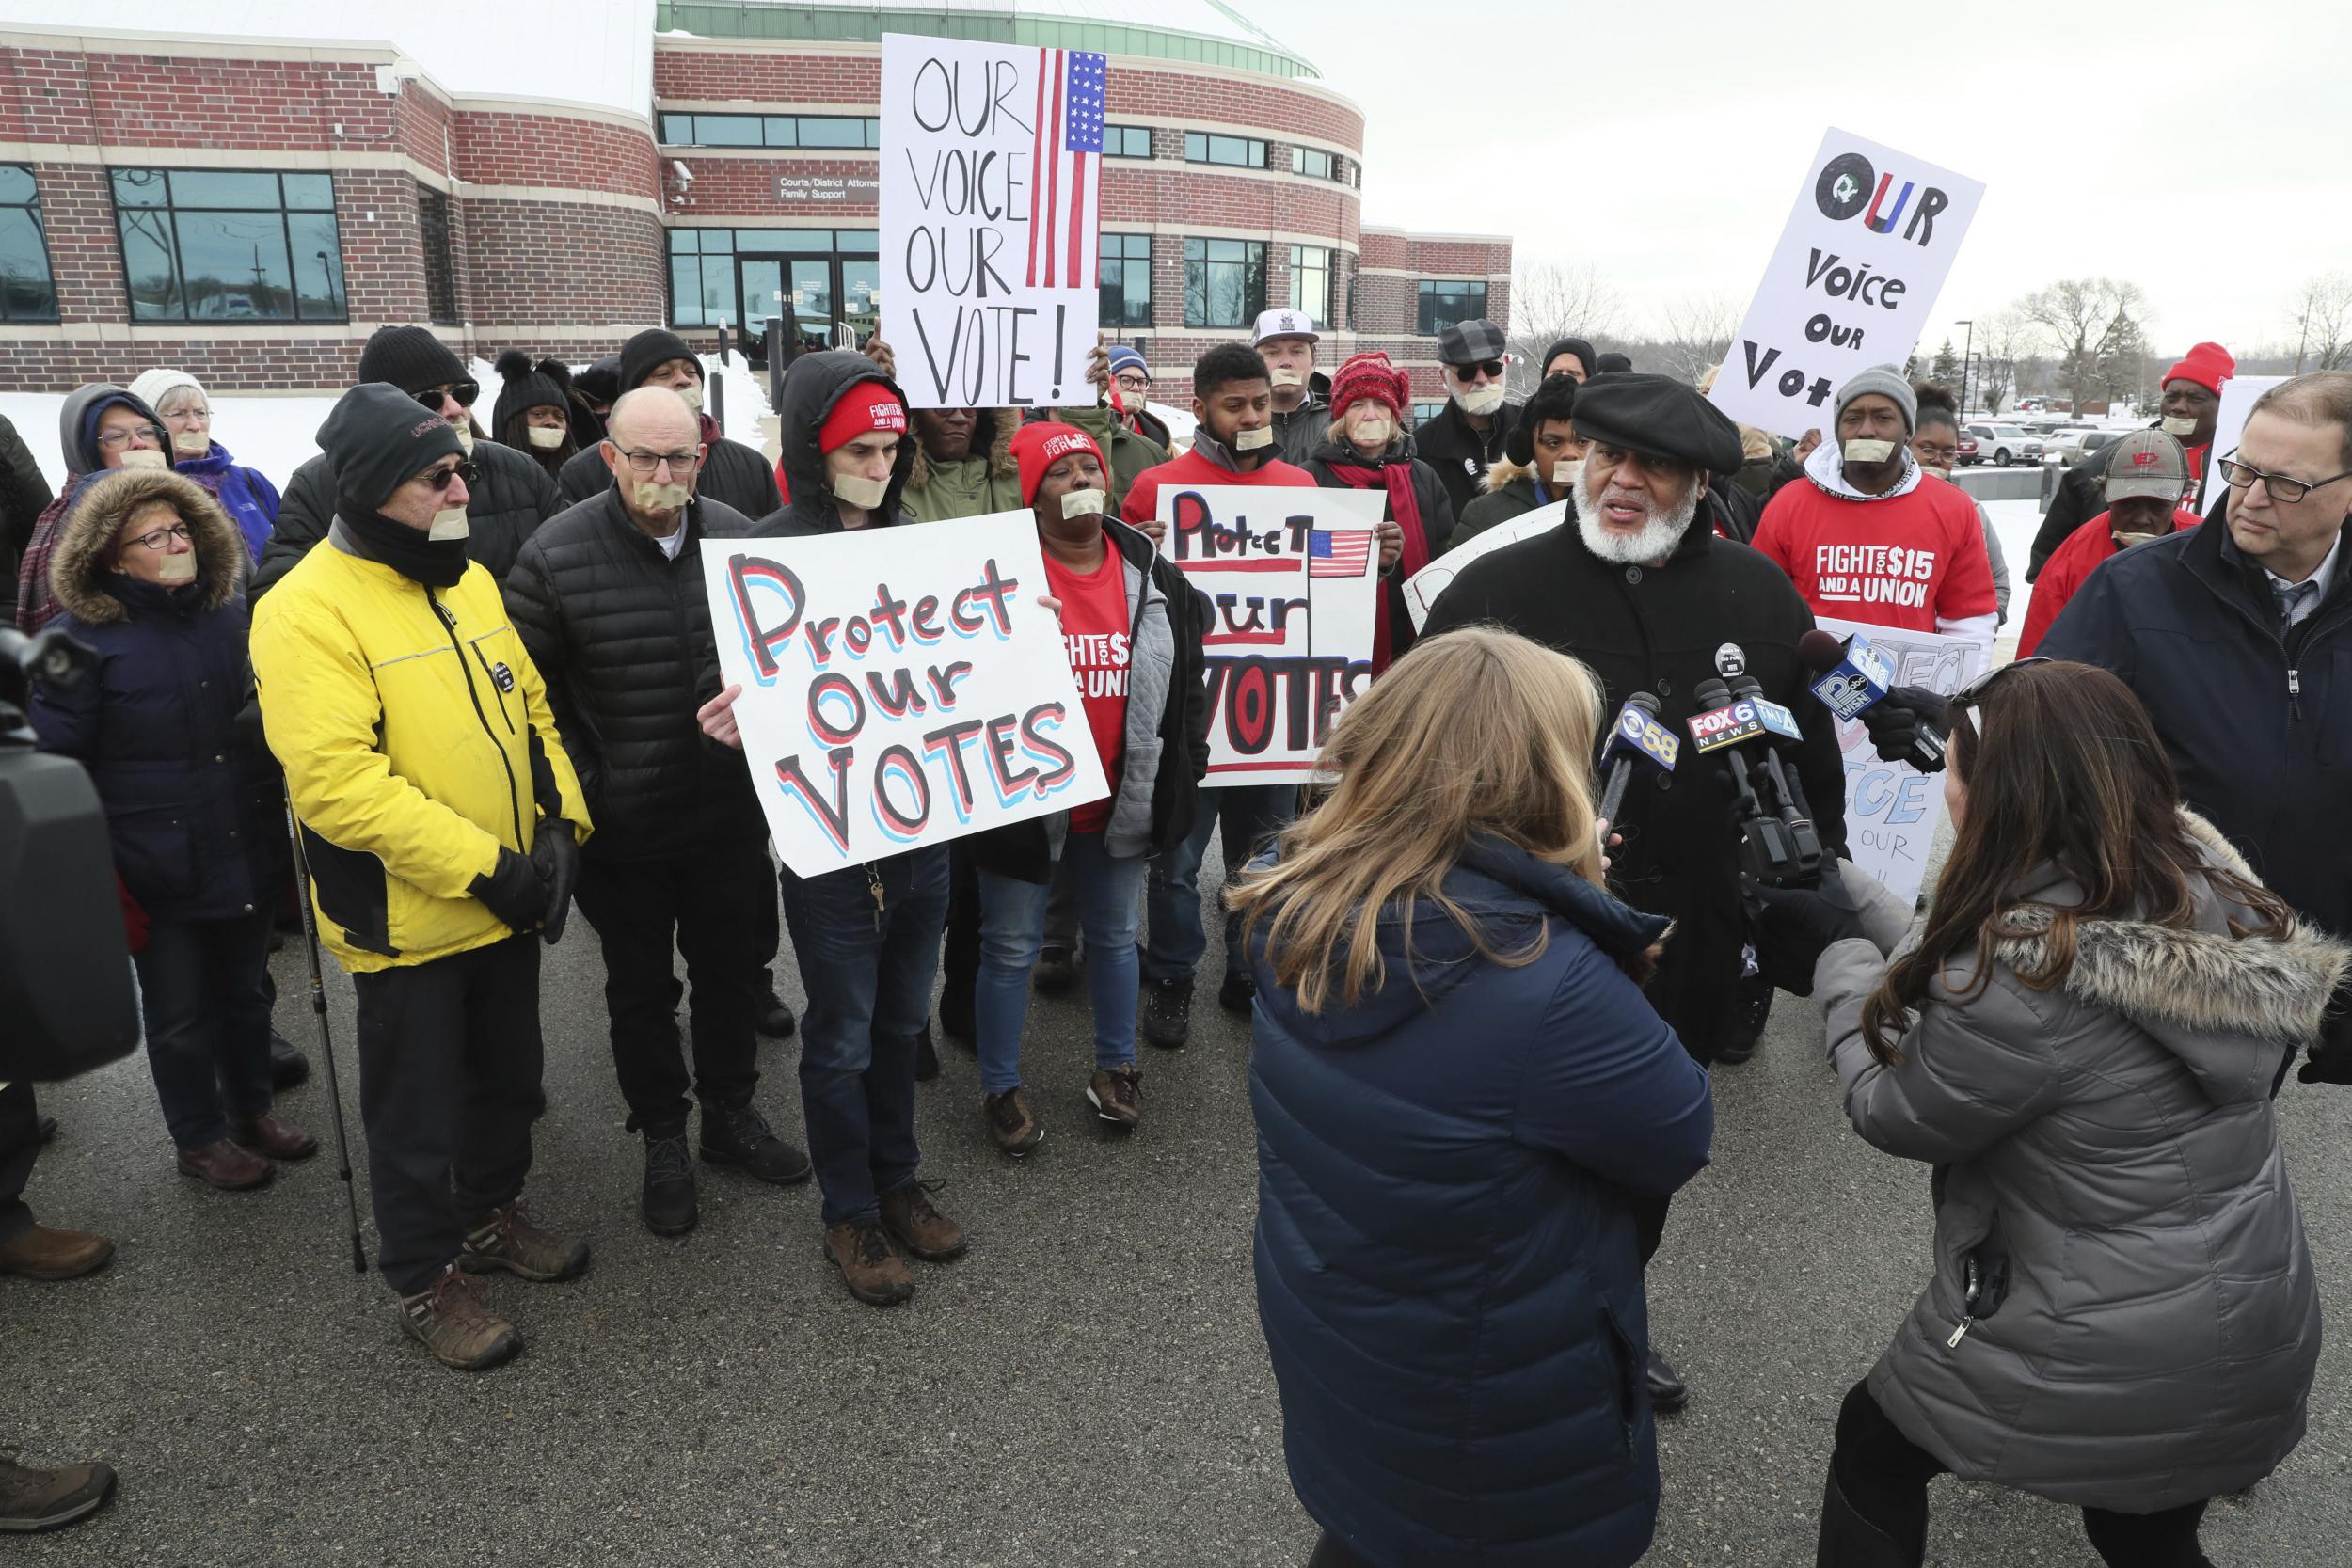 Judge Demands Massive Voter Roll Purge Impacting Democratic Majorities Across Wisconsin The